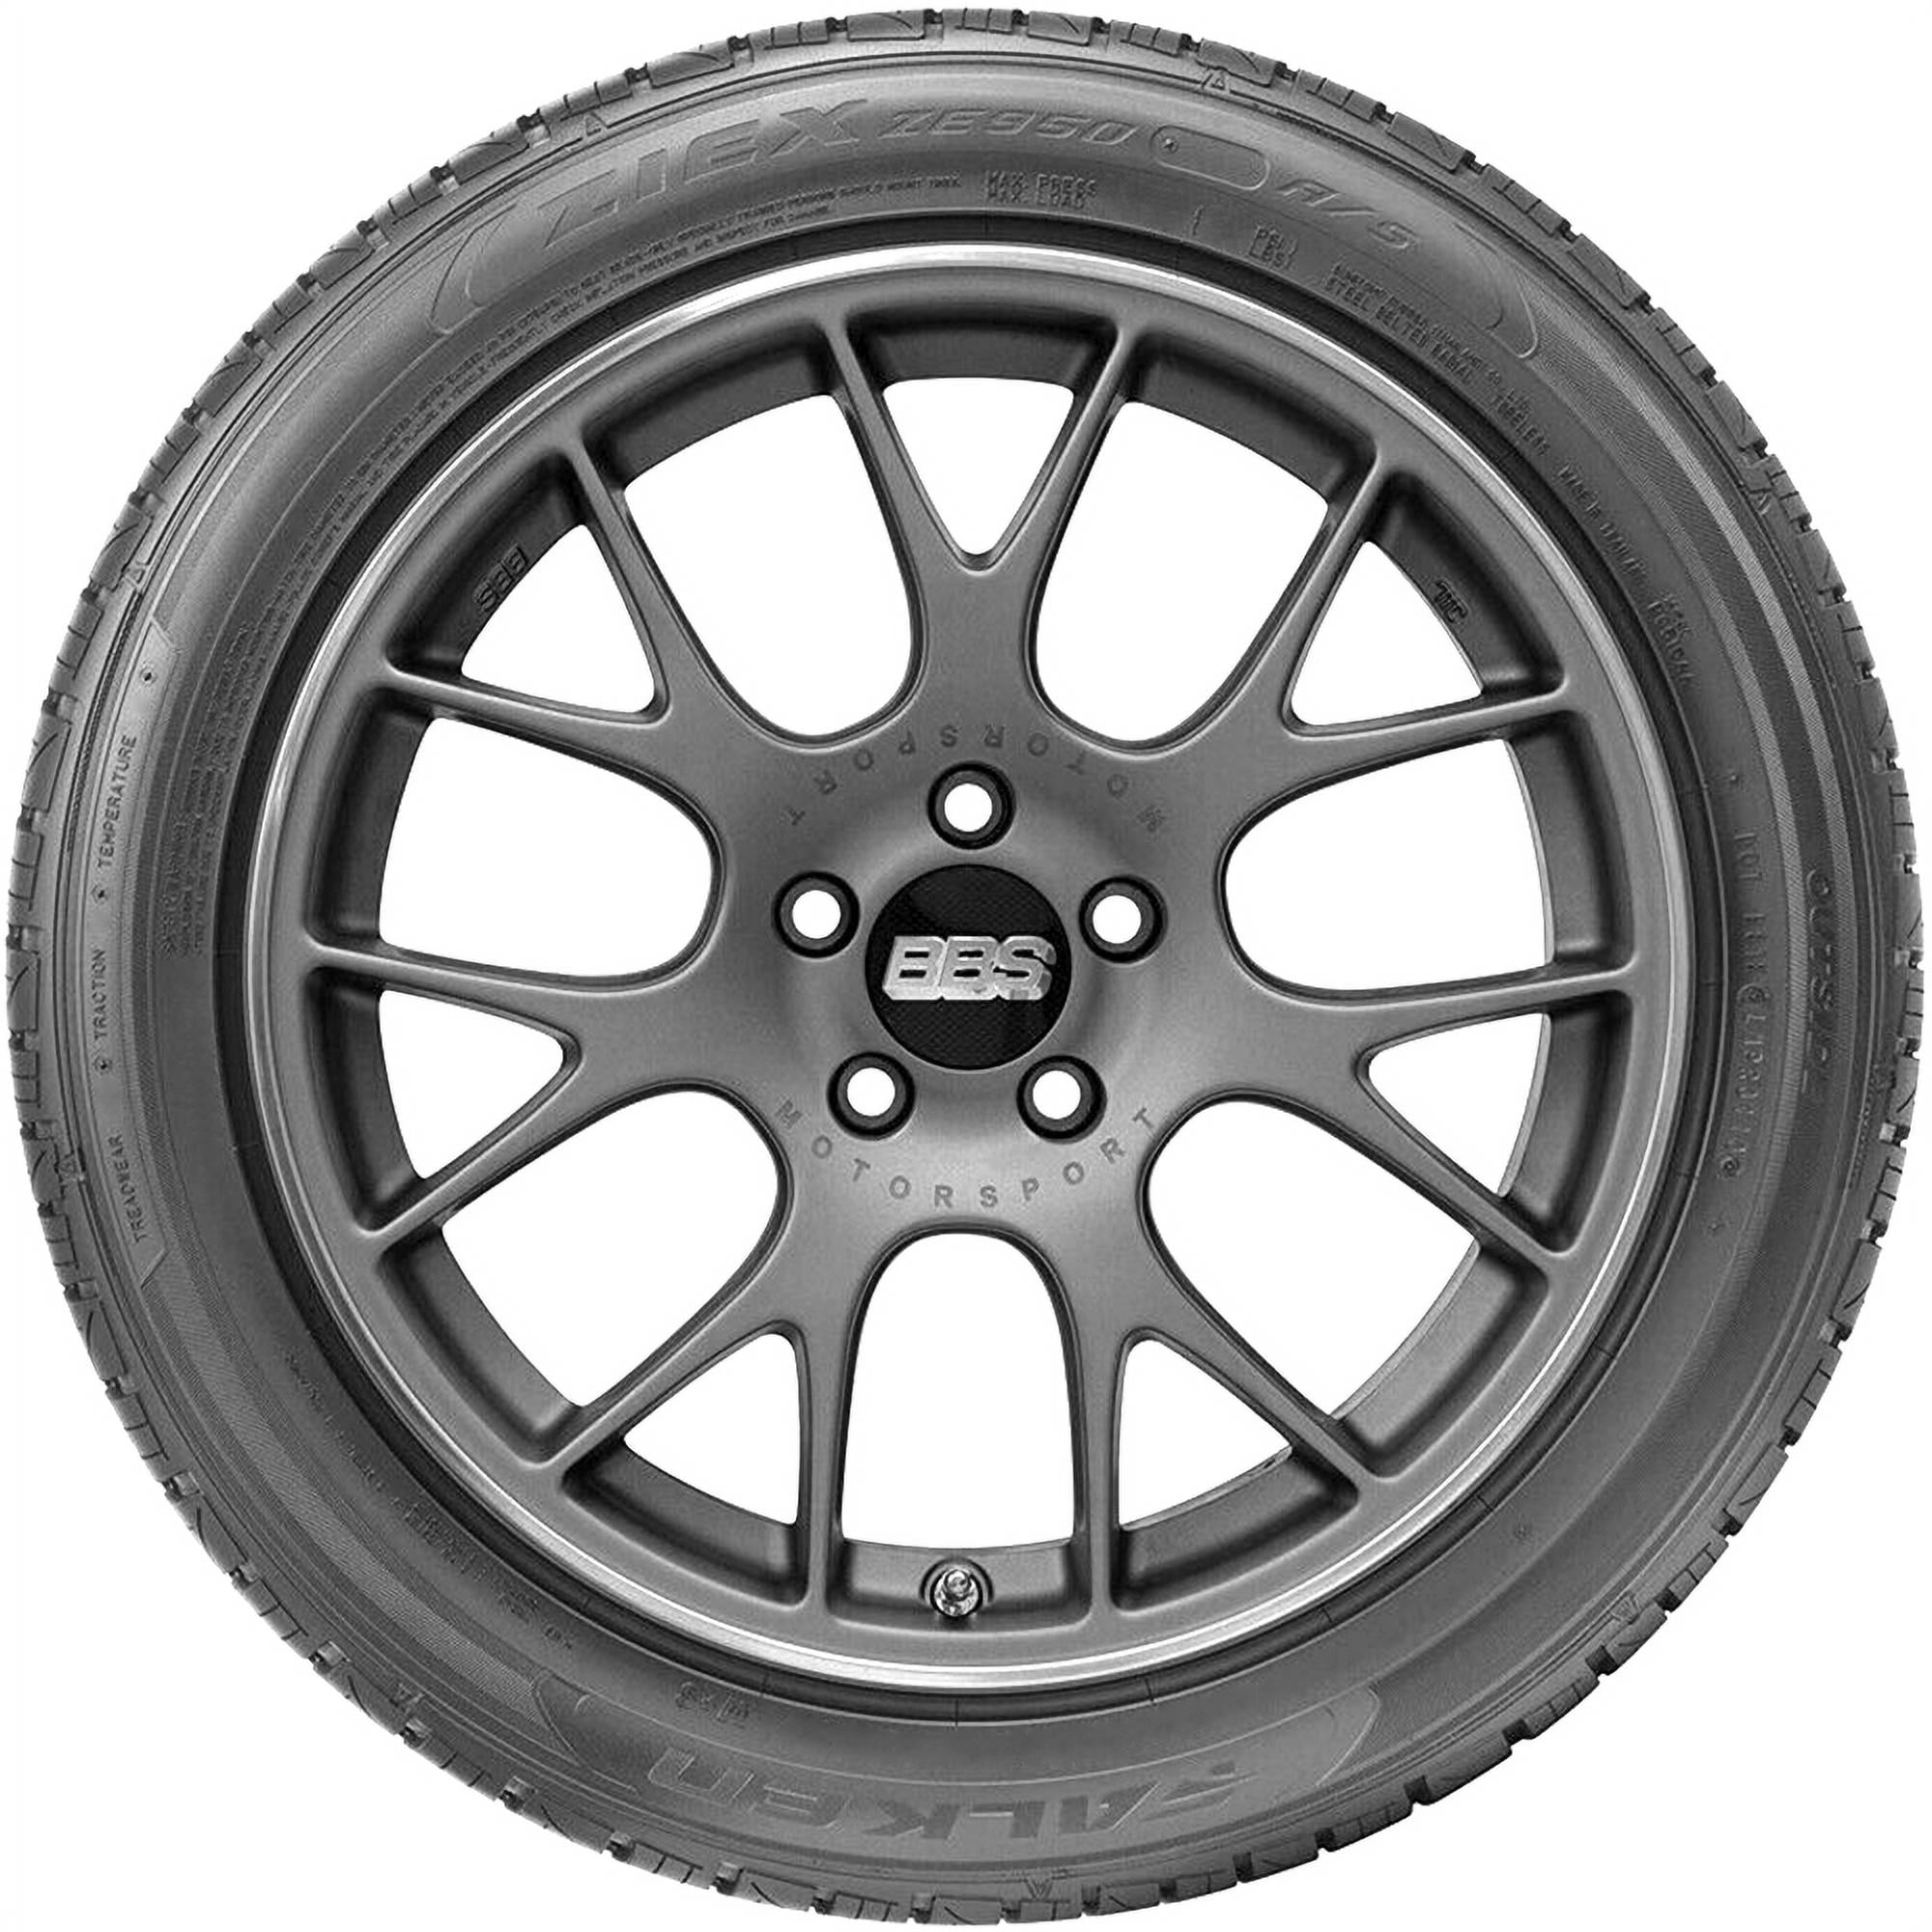 Falken Ziex ZE950 All-Season Radial Tire 205/50R17 93W 